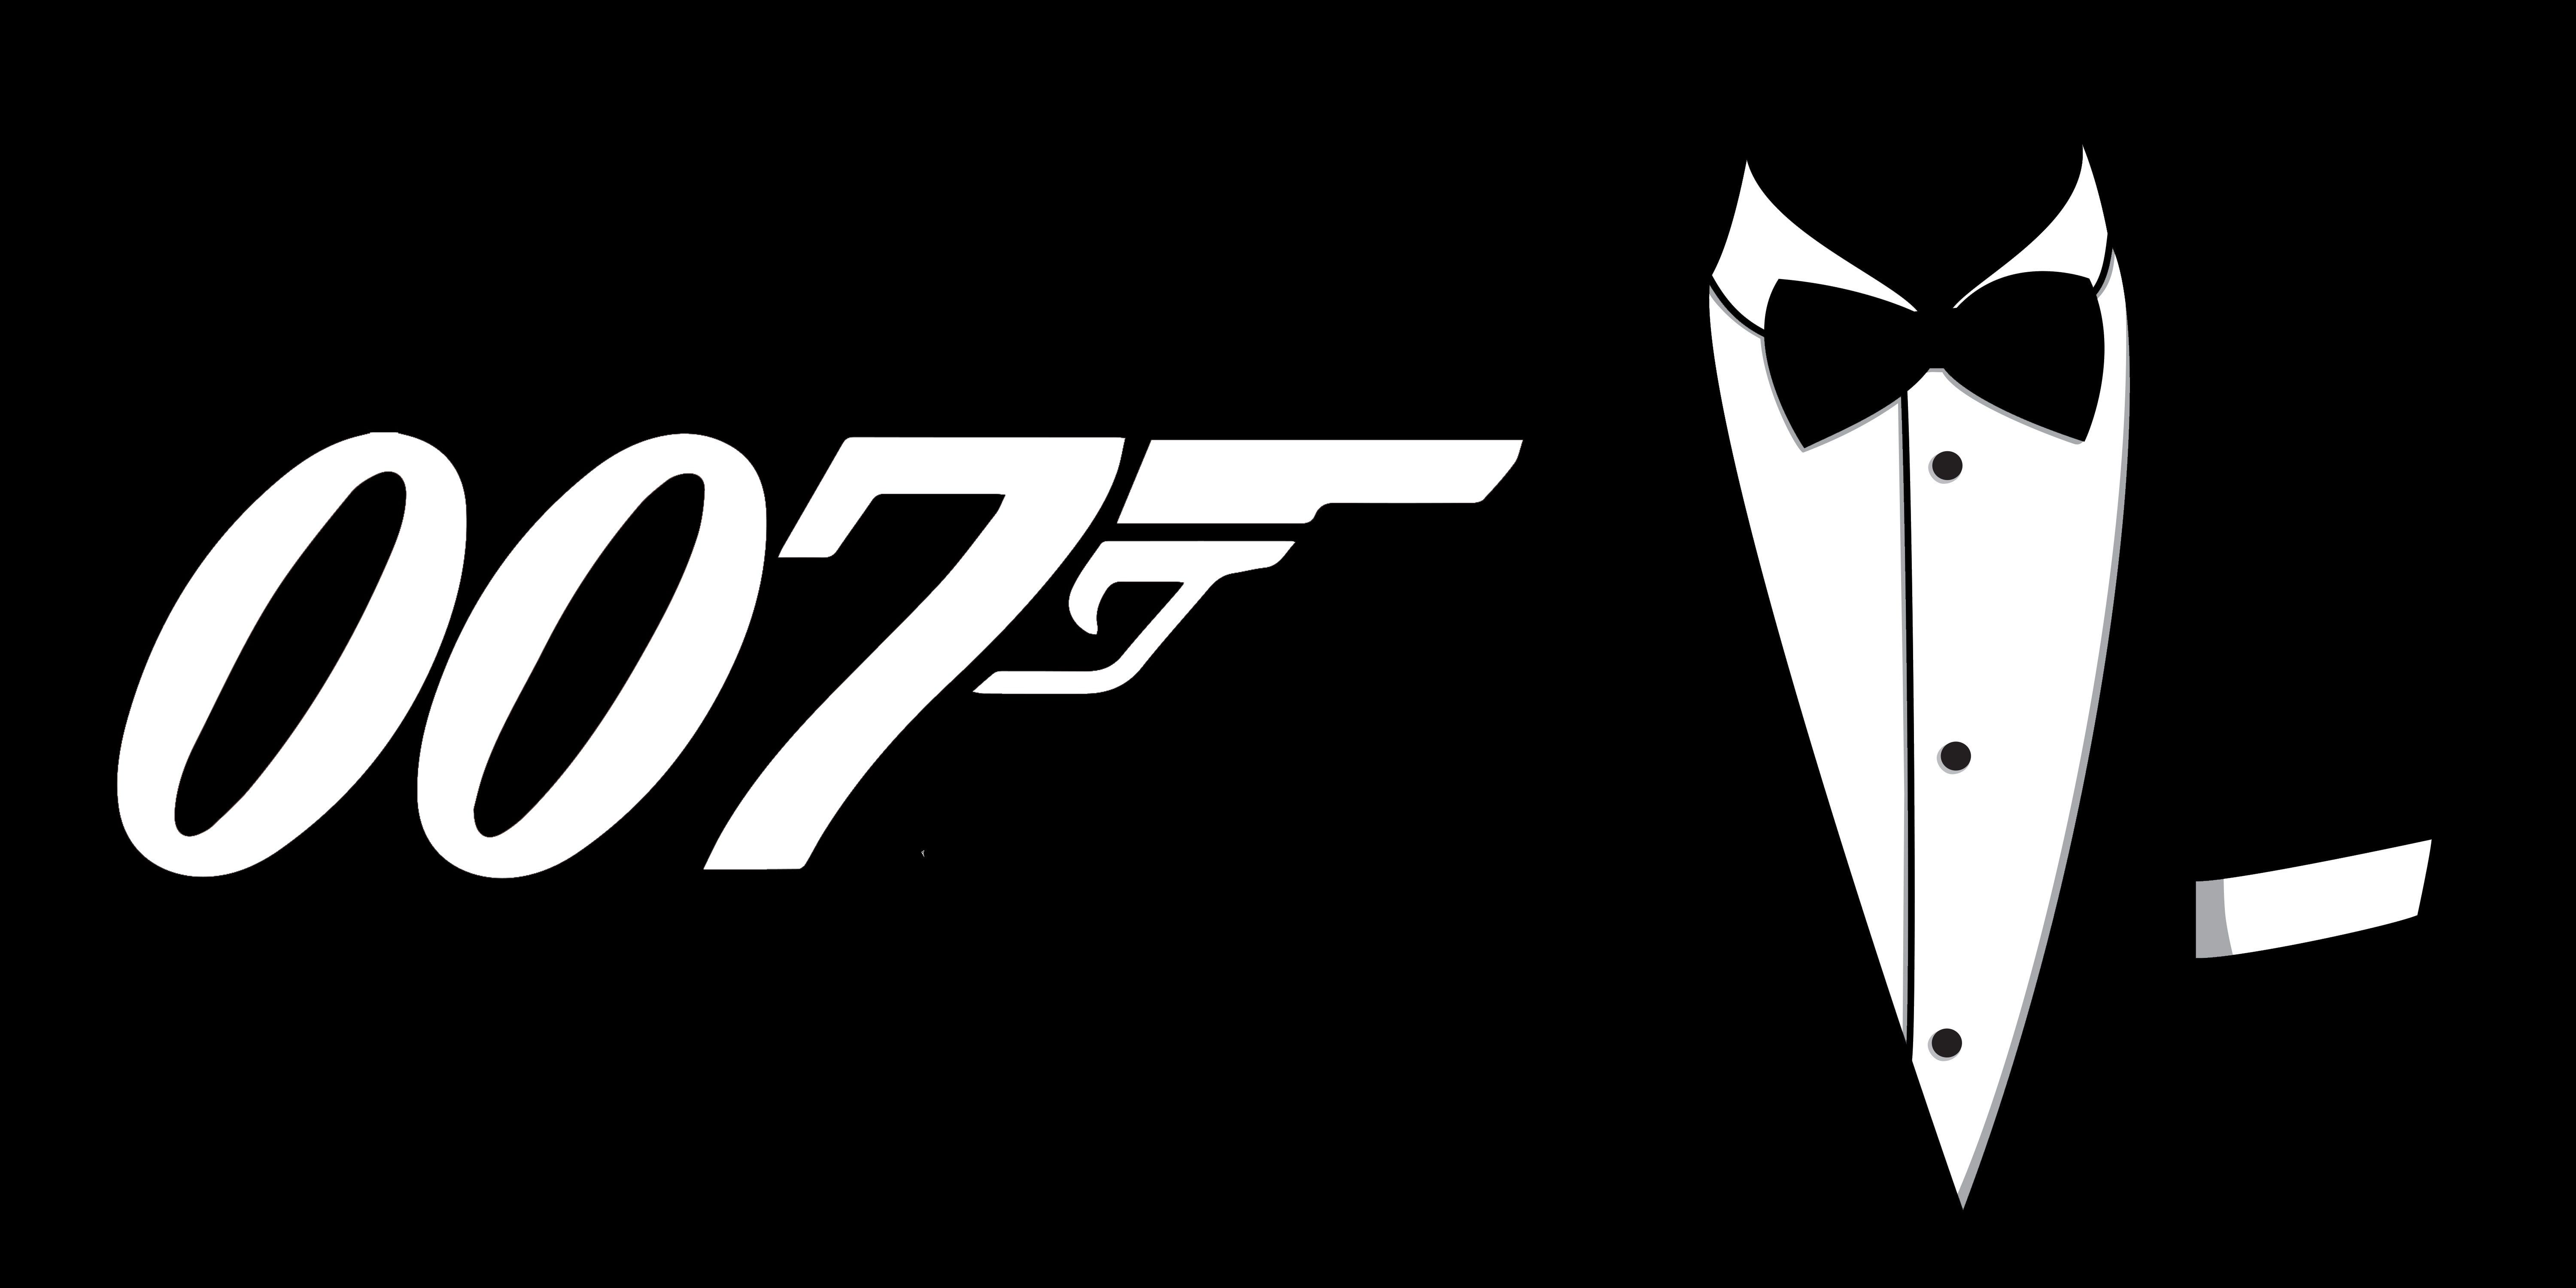 Dastardly dapper: the wardrobes of James Bond villains. The Movie